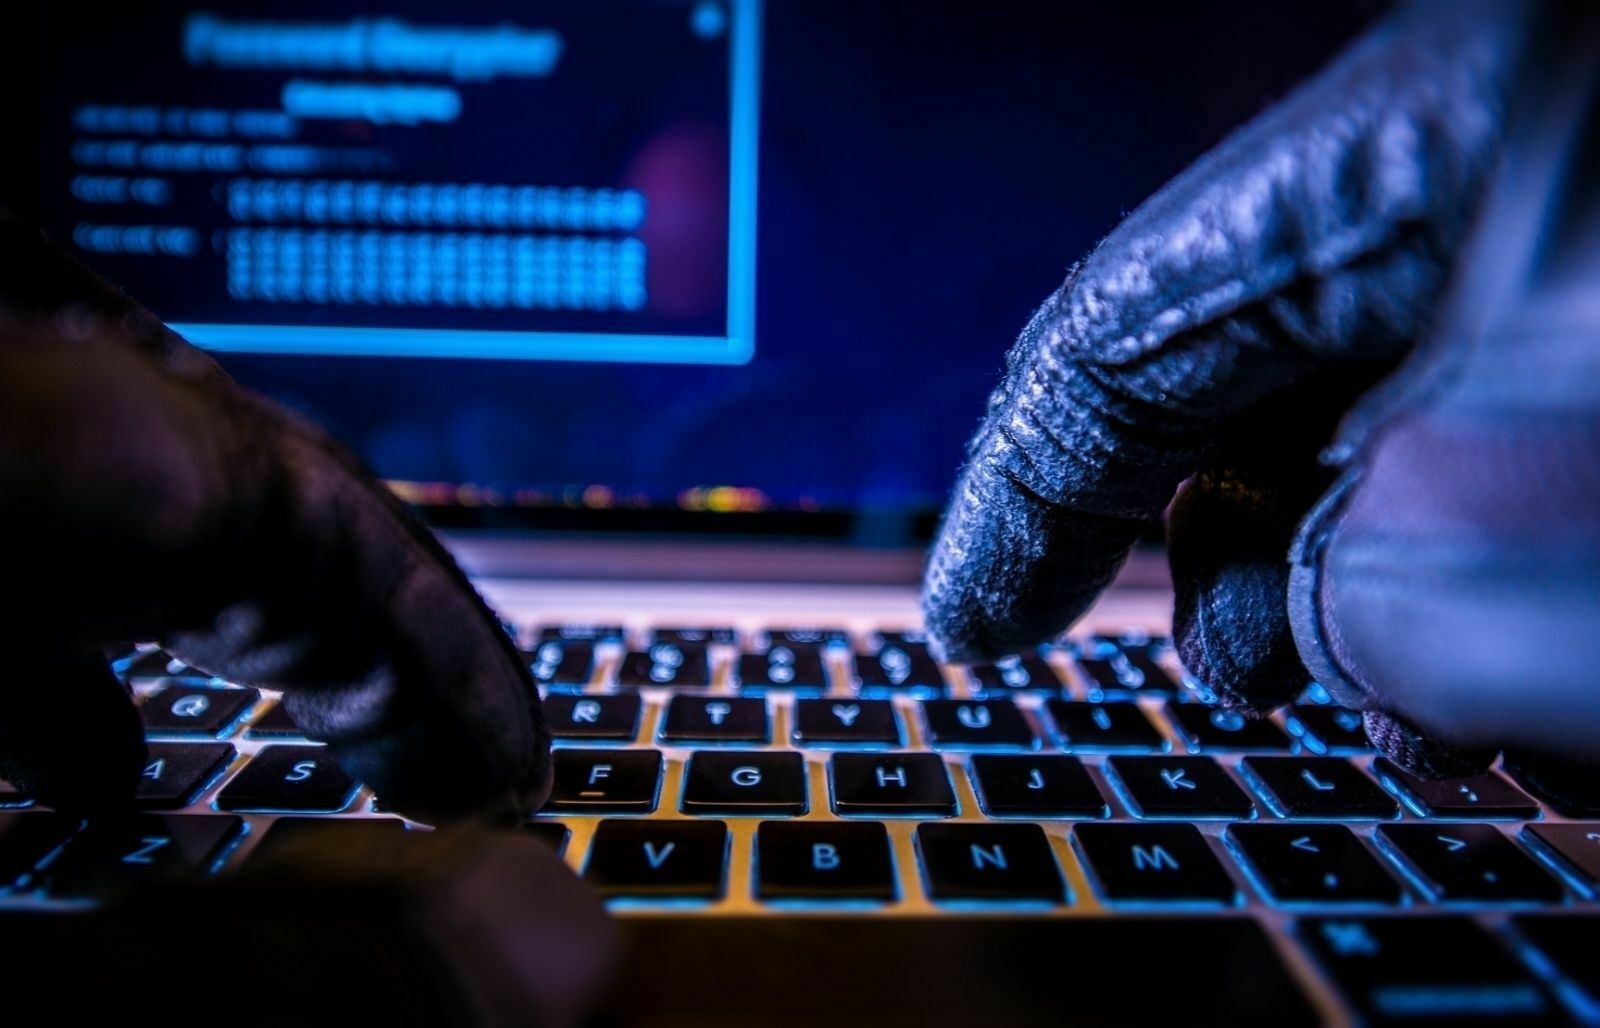 СМИ: сайт ФСИН подвергся 13-часовой кибератаке с серверов из Китая, США и Турции